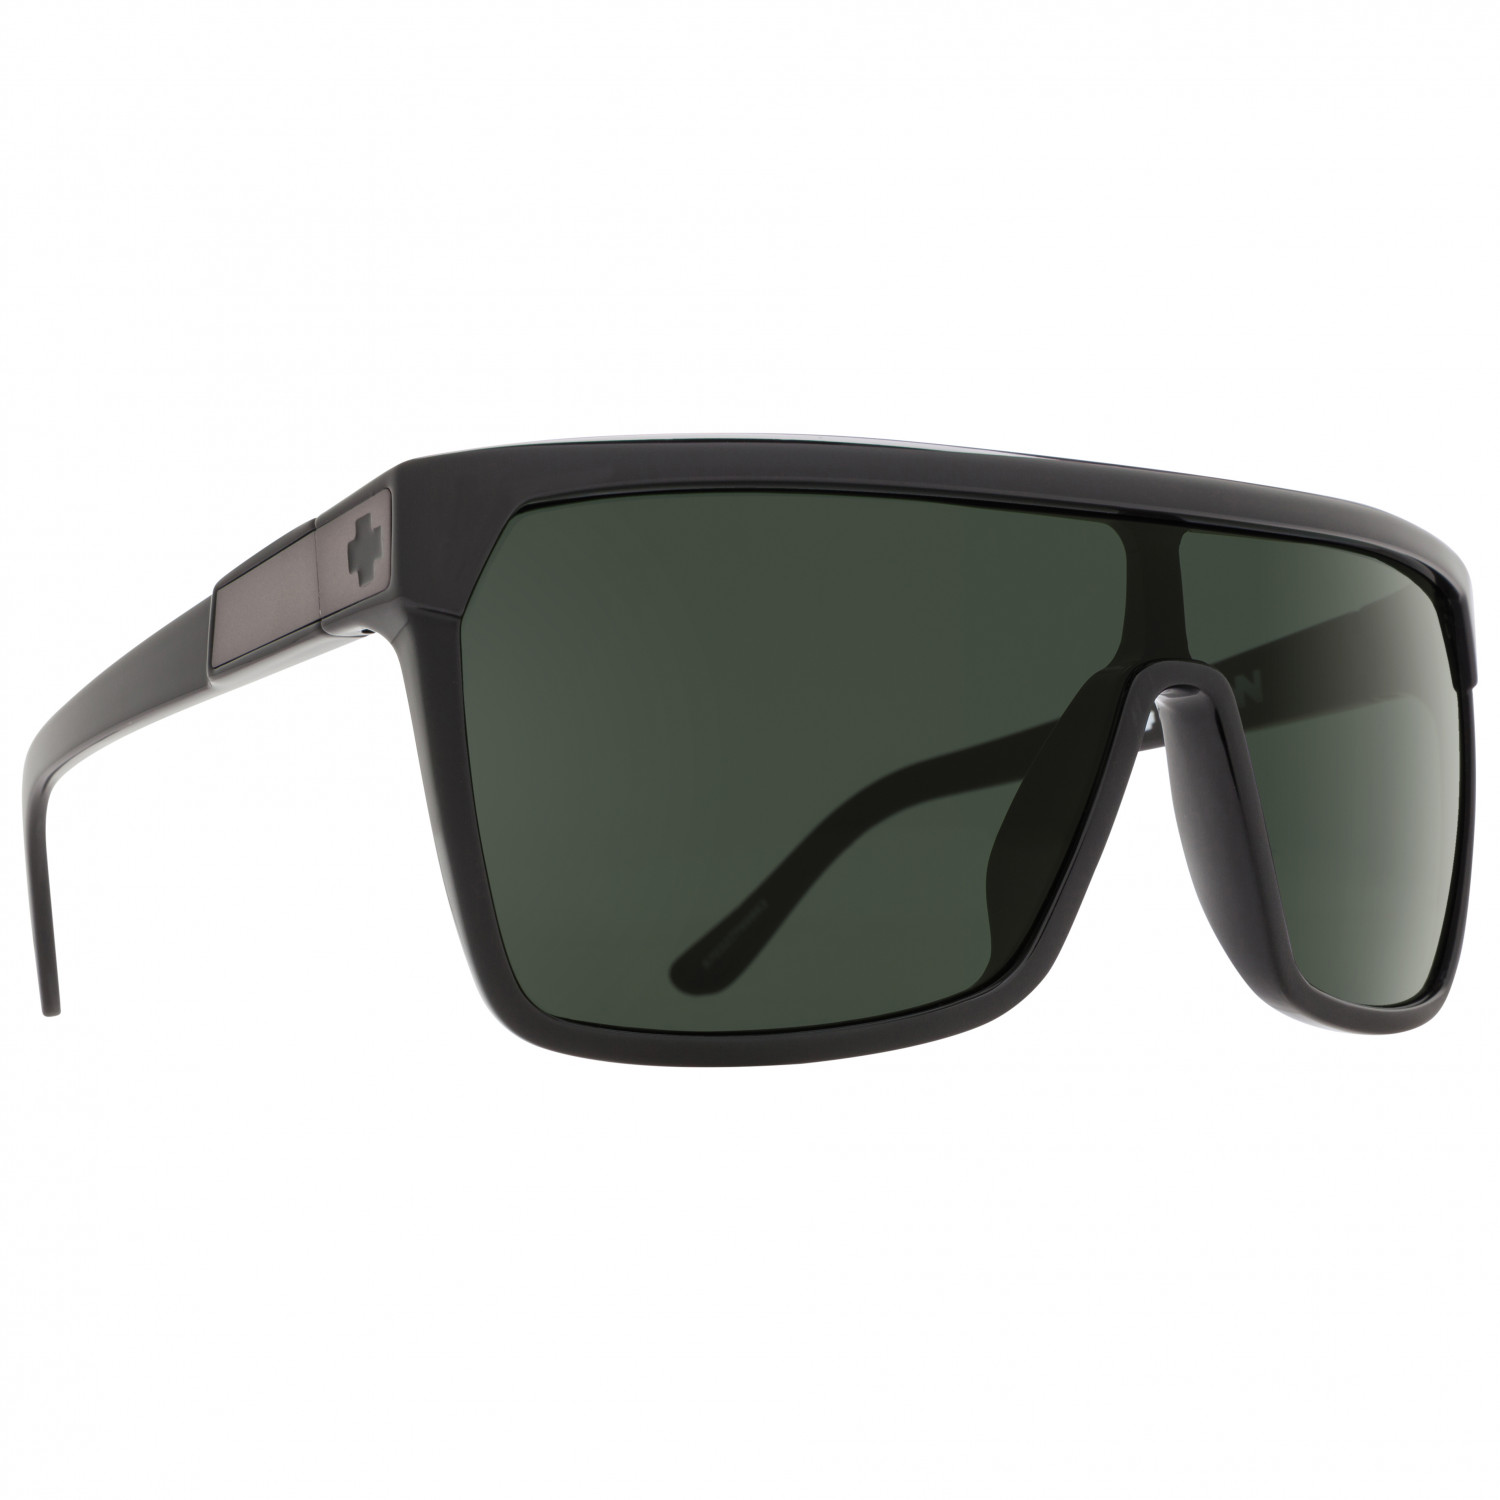 Солнцезащитные очки Spy+ Flynn S3 (VLT 15%), цвет Black/Matte Black